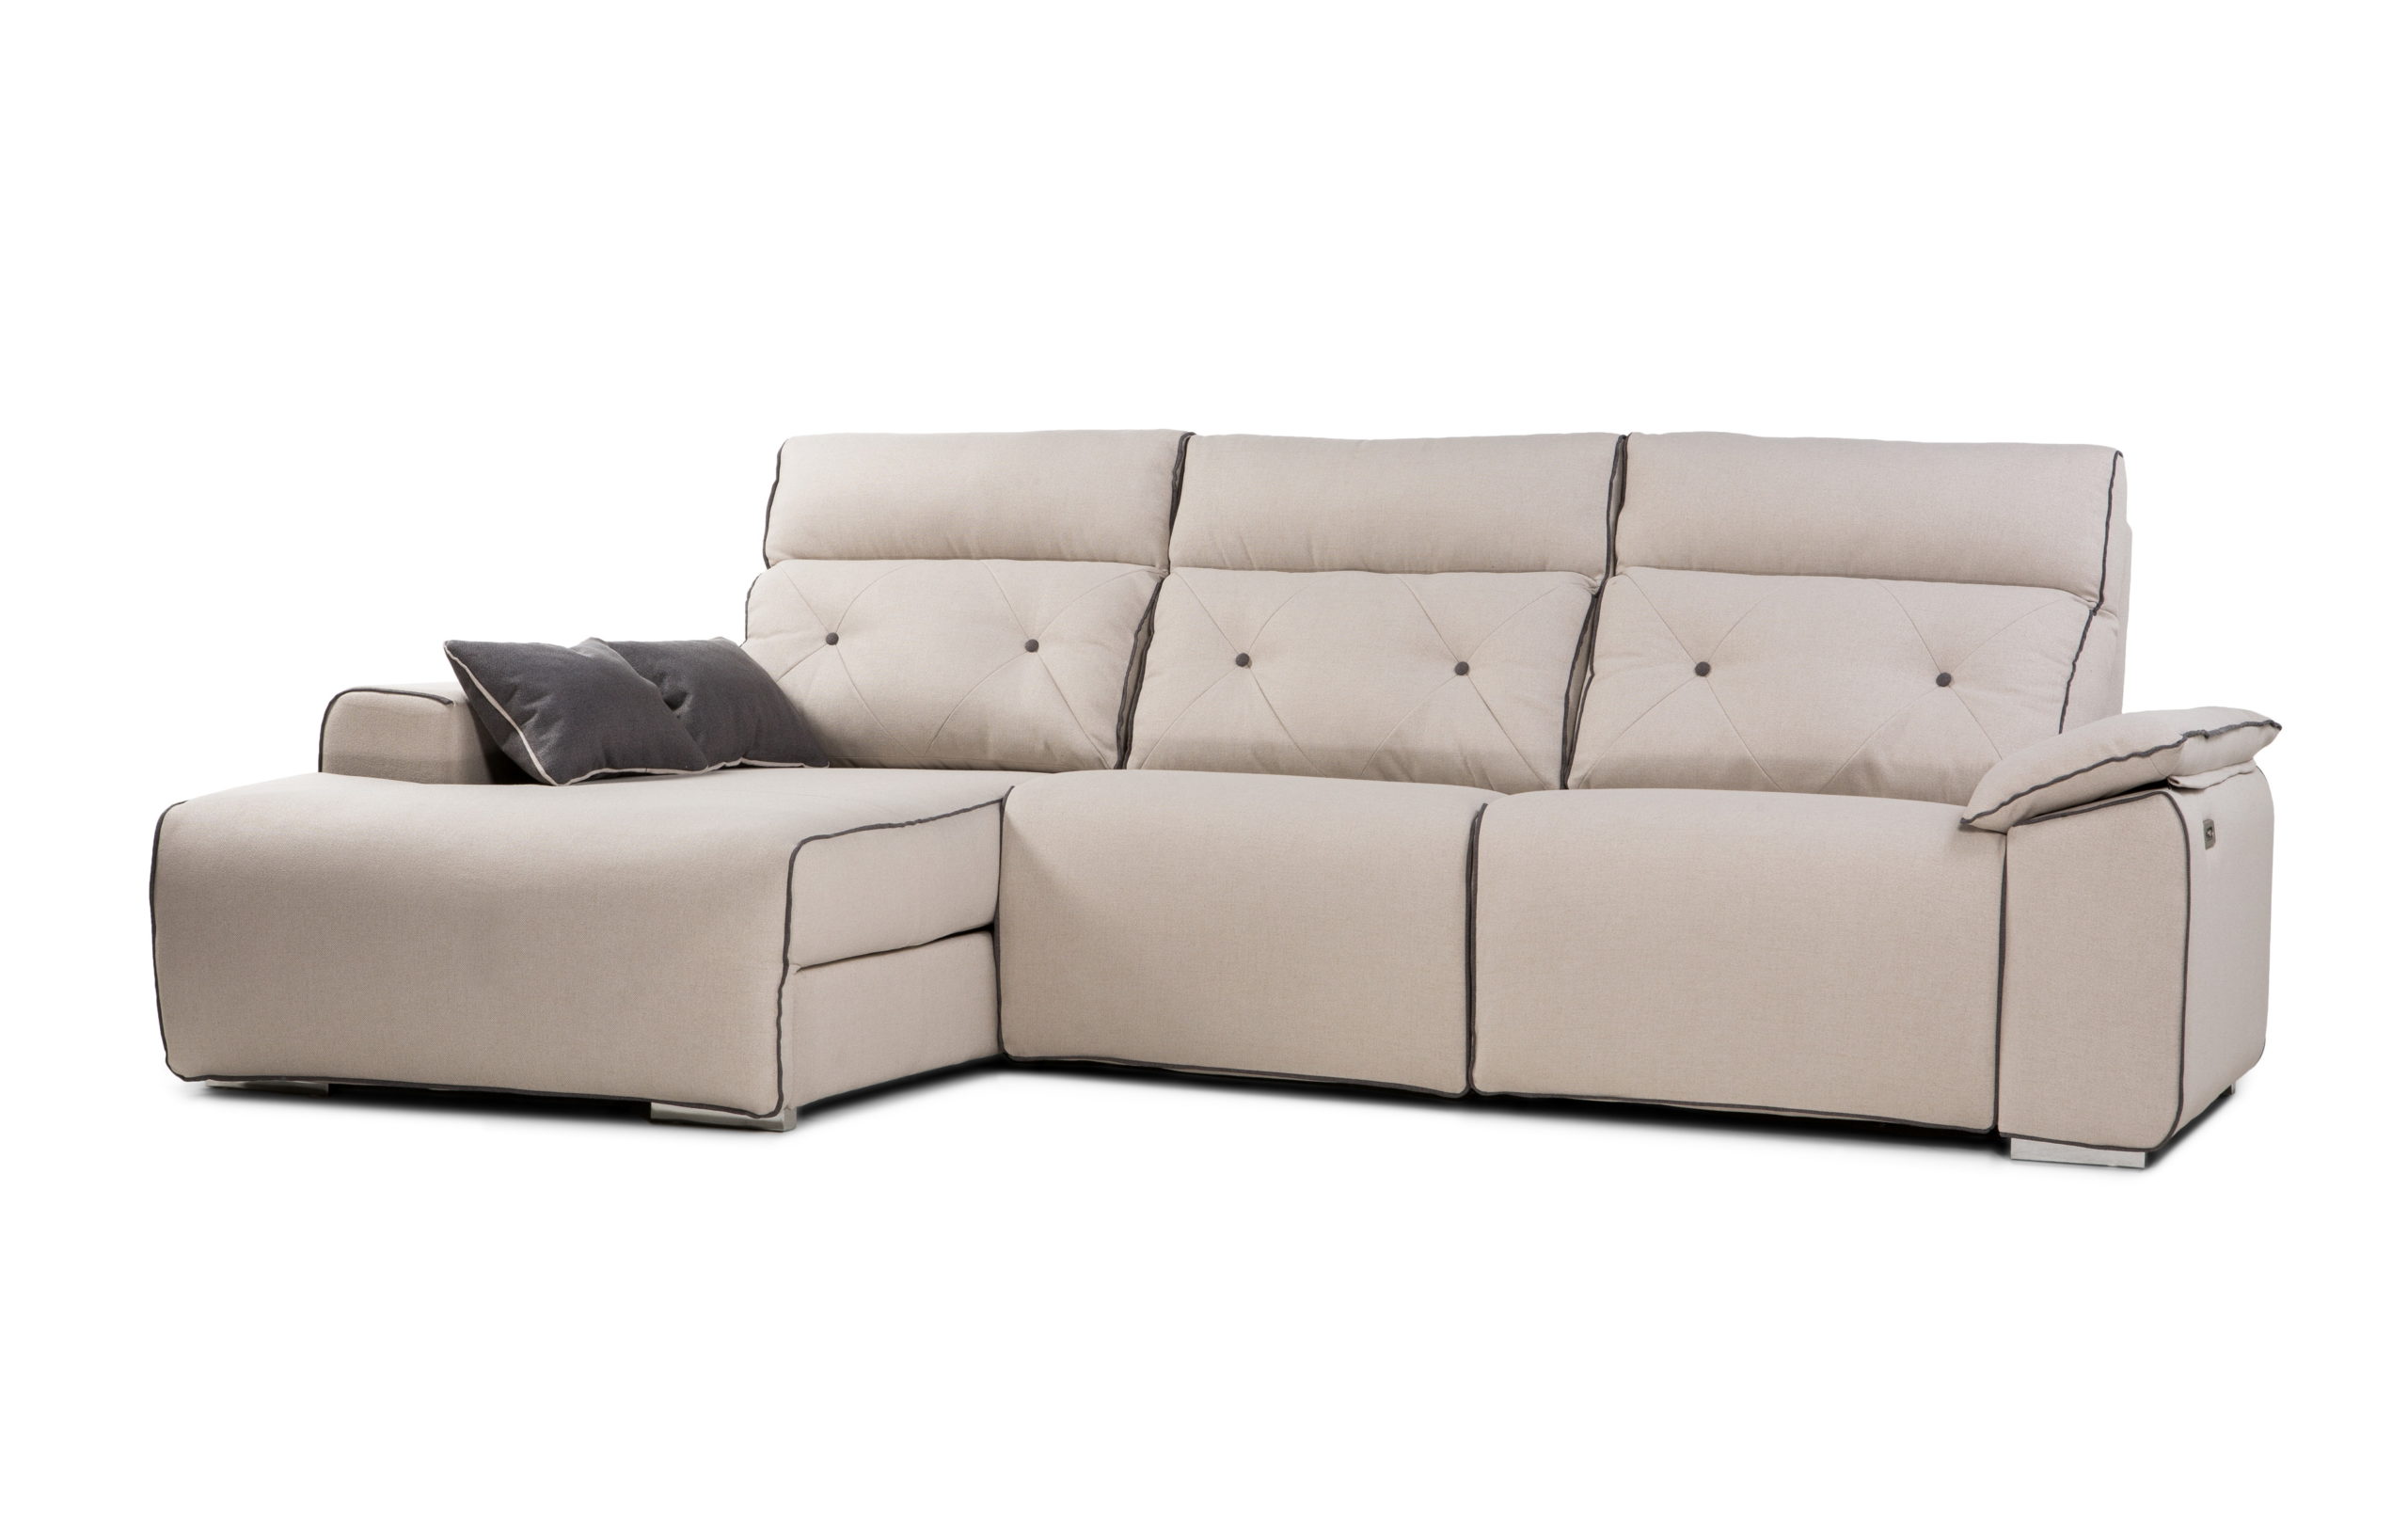 NATIVA sofá modular asientos relax o fijos by Reyes Ordoñez SOFÁ CHAISE-LONGUE Nativa sofá 001.2 de venta en Muebles ANTOÑÁN León